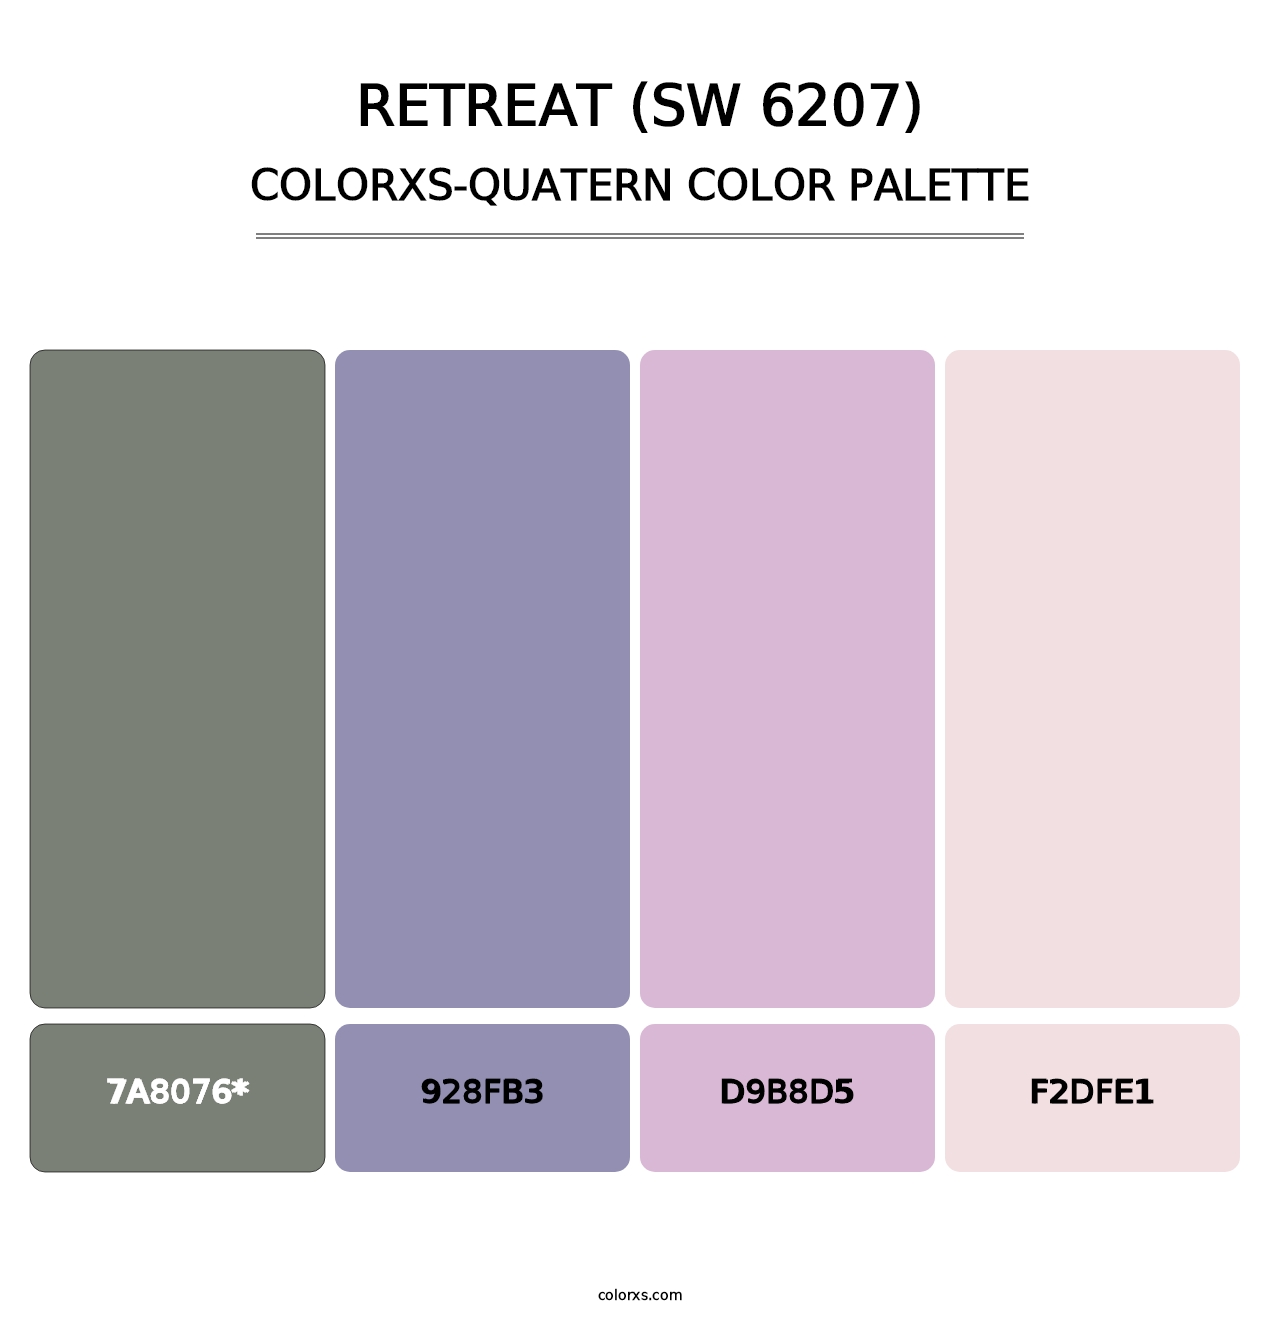 Retreat (SW 6207) - Colorxs Quatern Palette